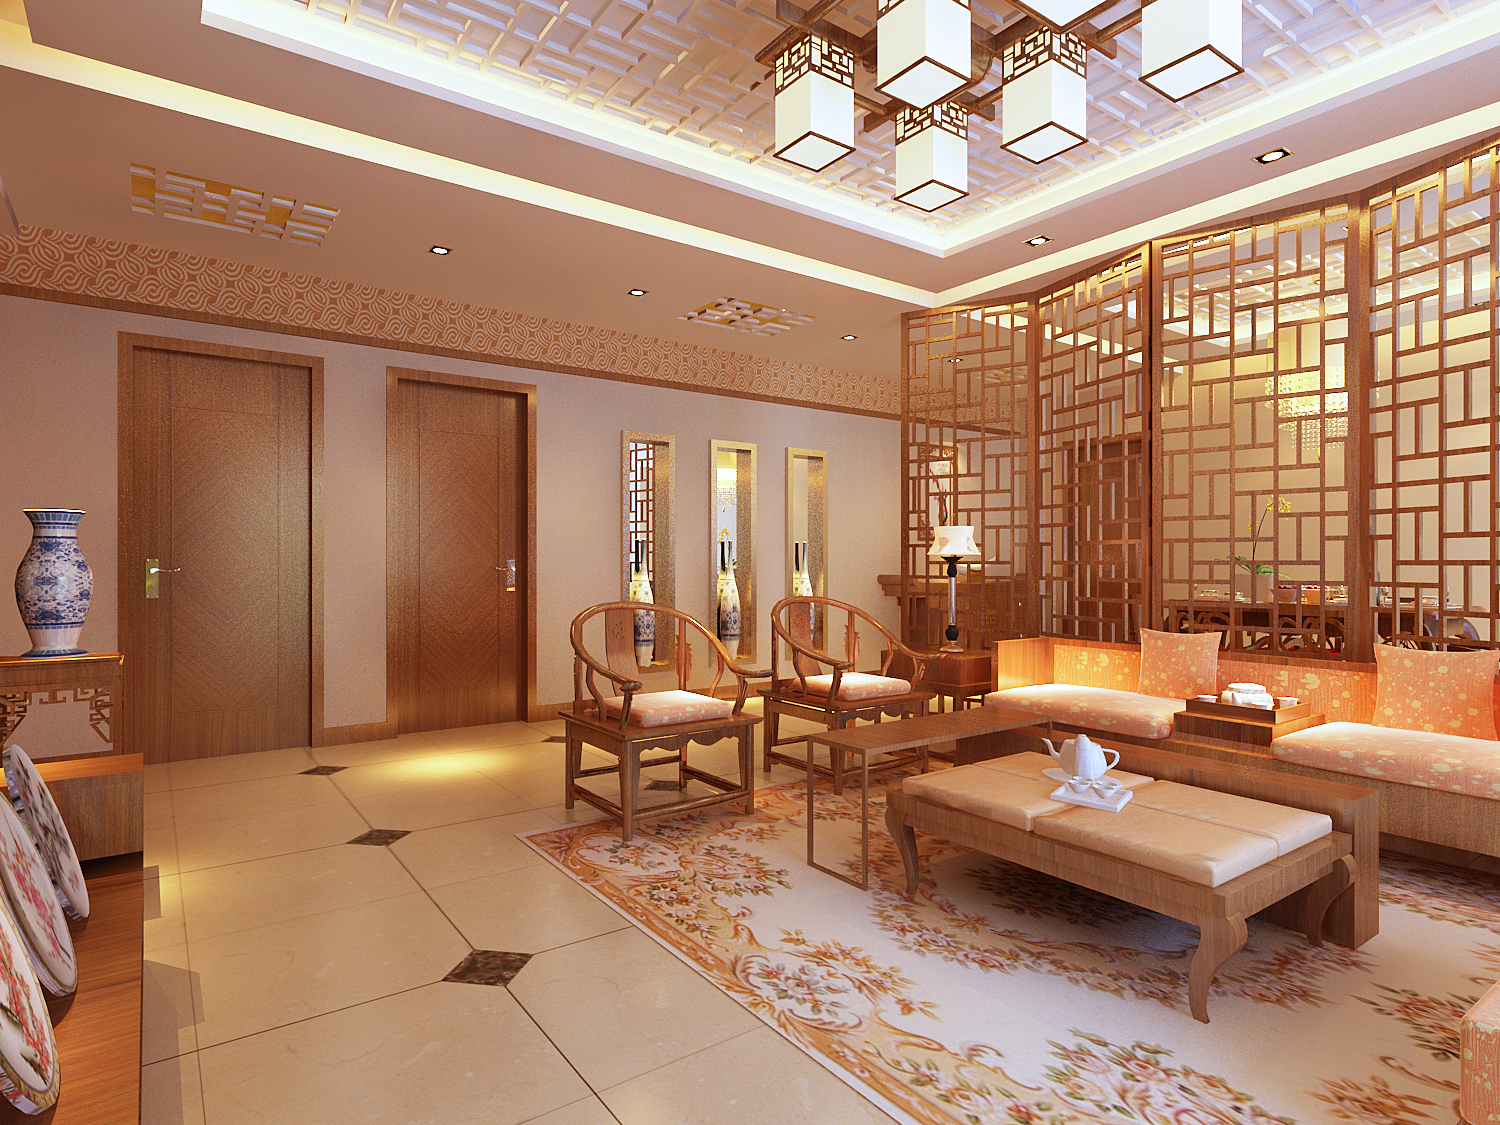 中式 古典 三居 装饰 客厅图片来自南京实创装饰夏雨荷在古香古韵的中式大家风范的分享